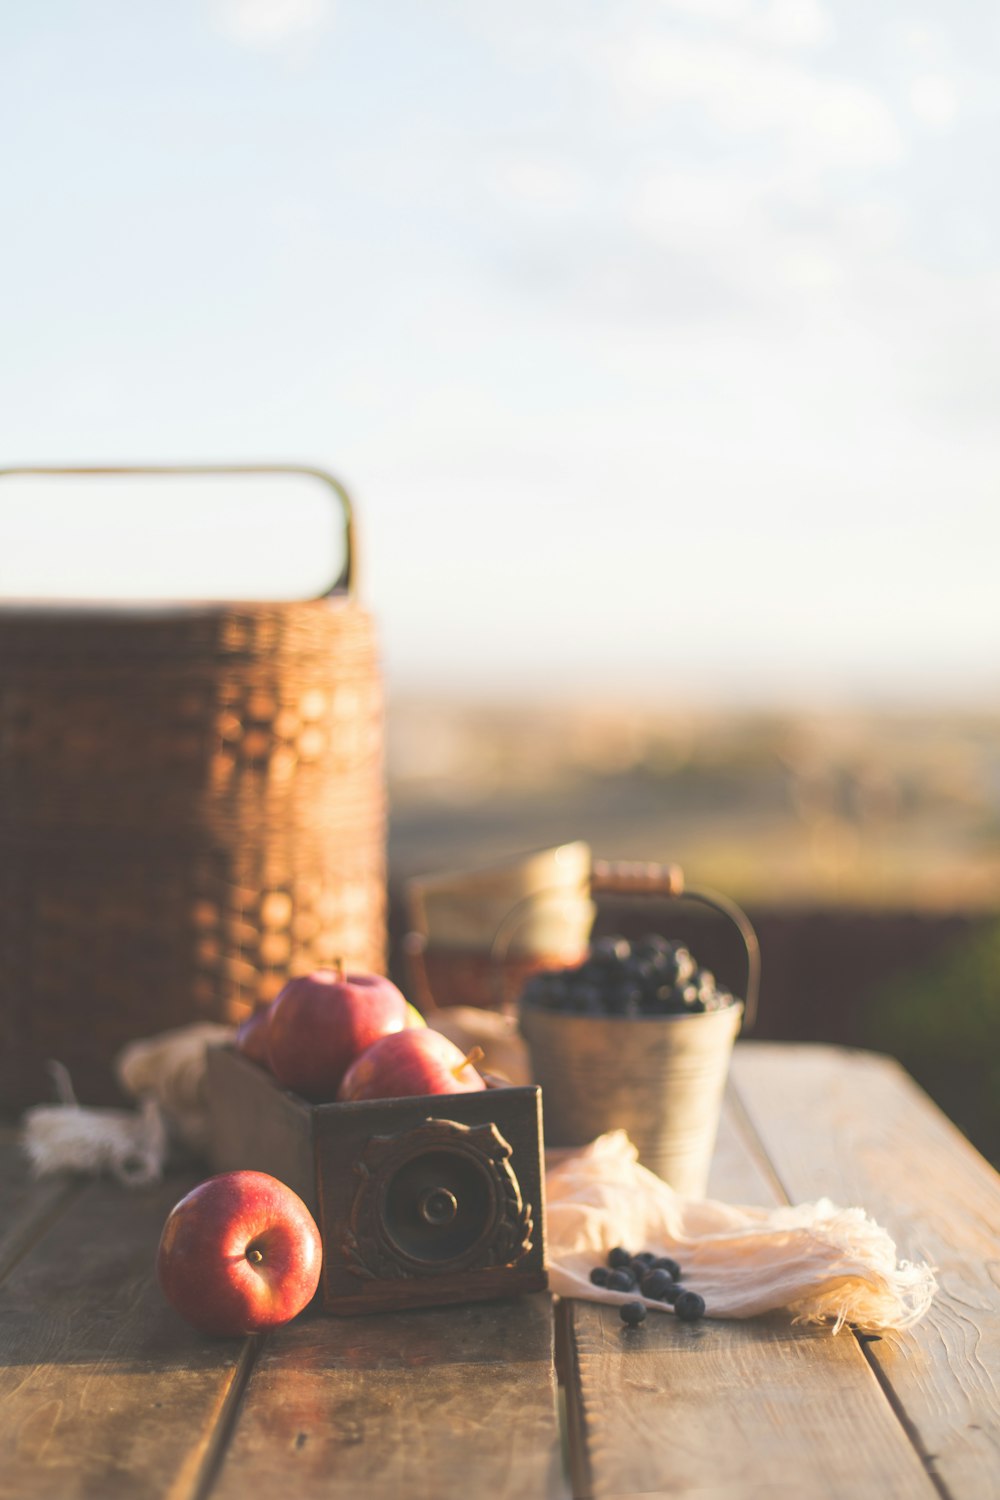 honey crisp apple beside baskets